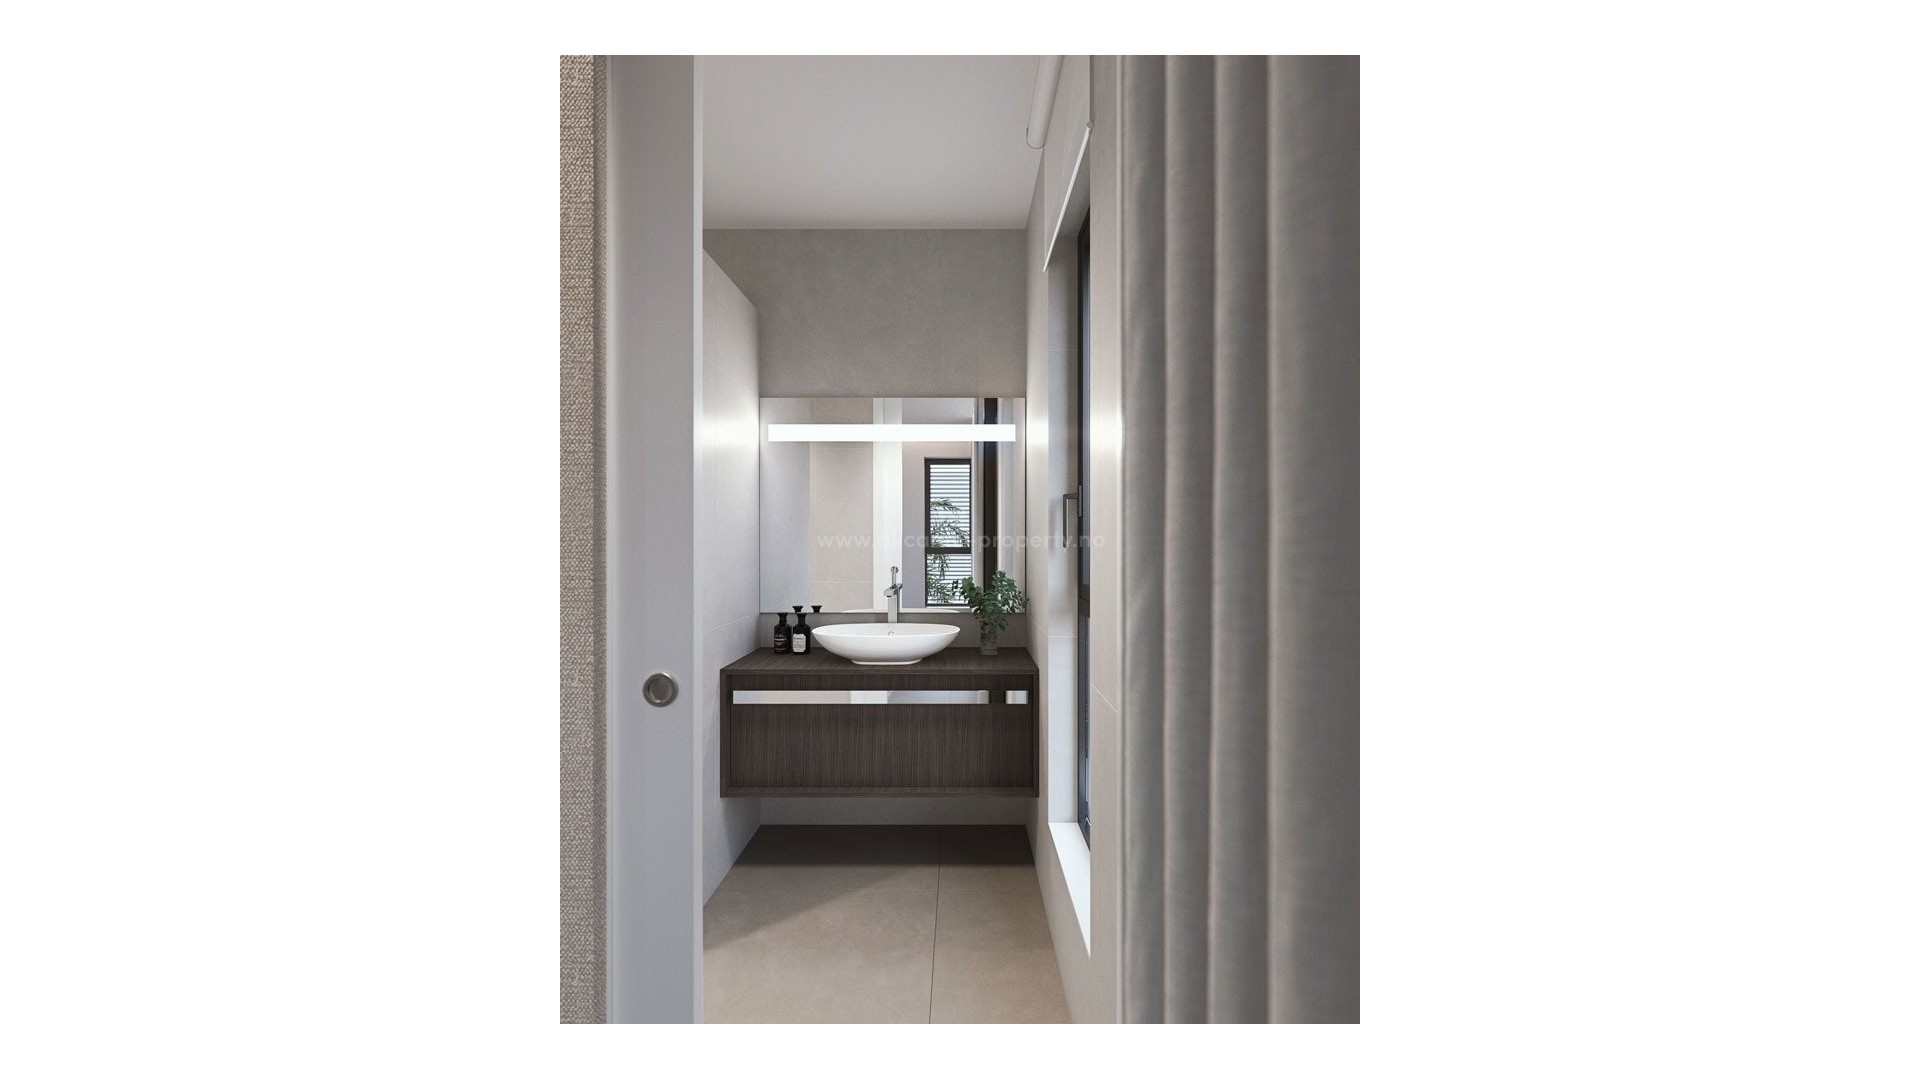 2 luxury villas in Torre de La Horadada with sea views, 3/4 bedrooms, 3 bathrooms, private gardens with swimming pool